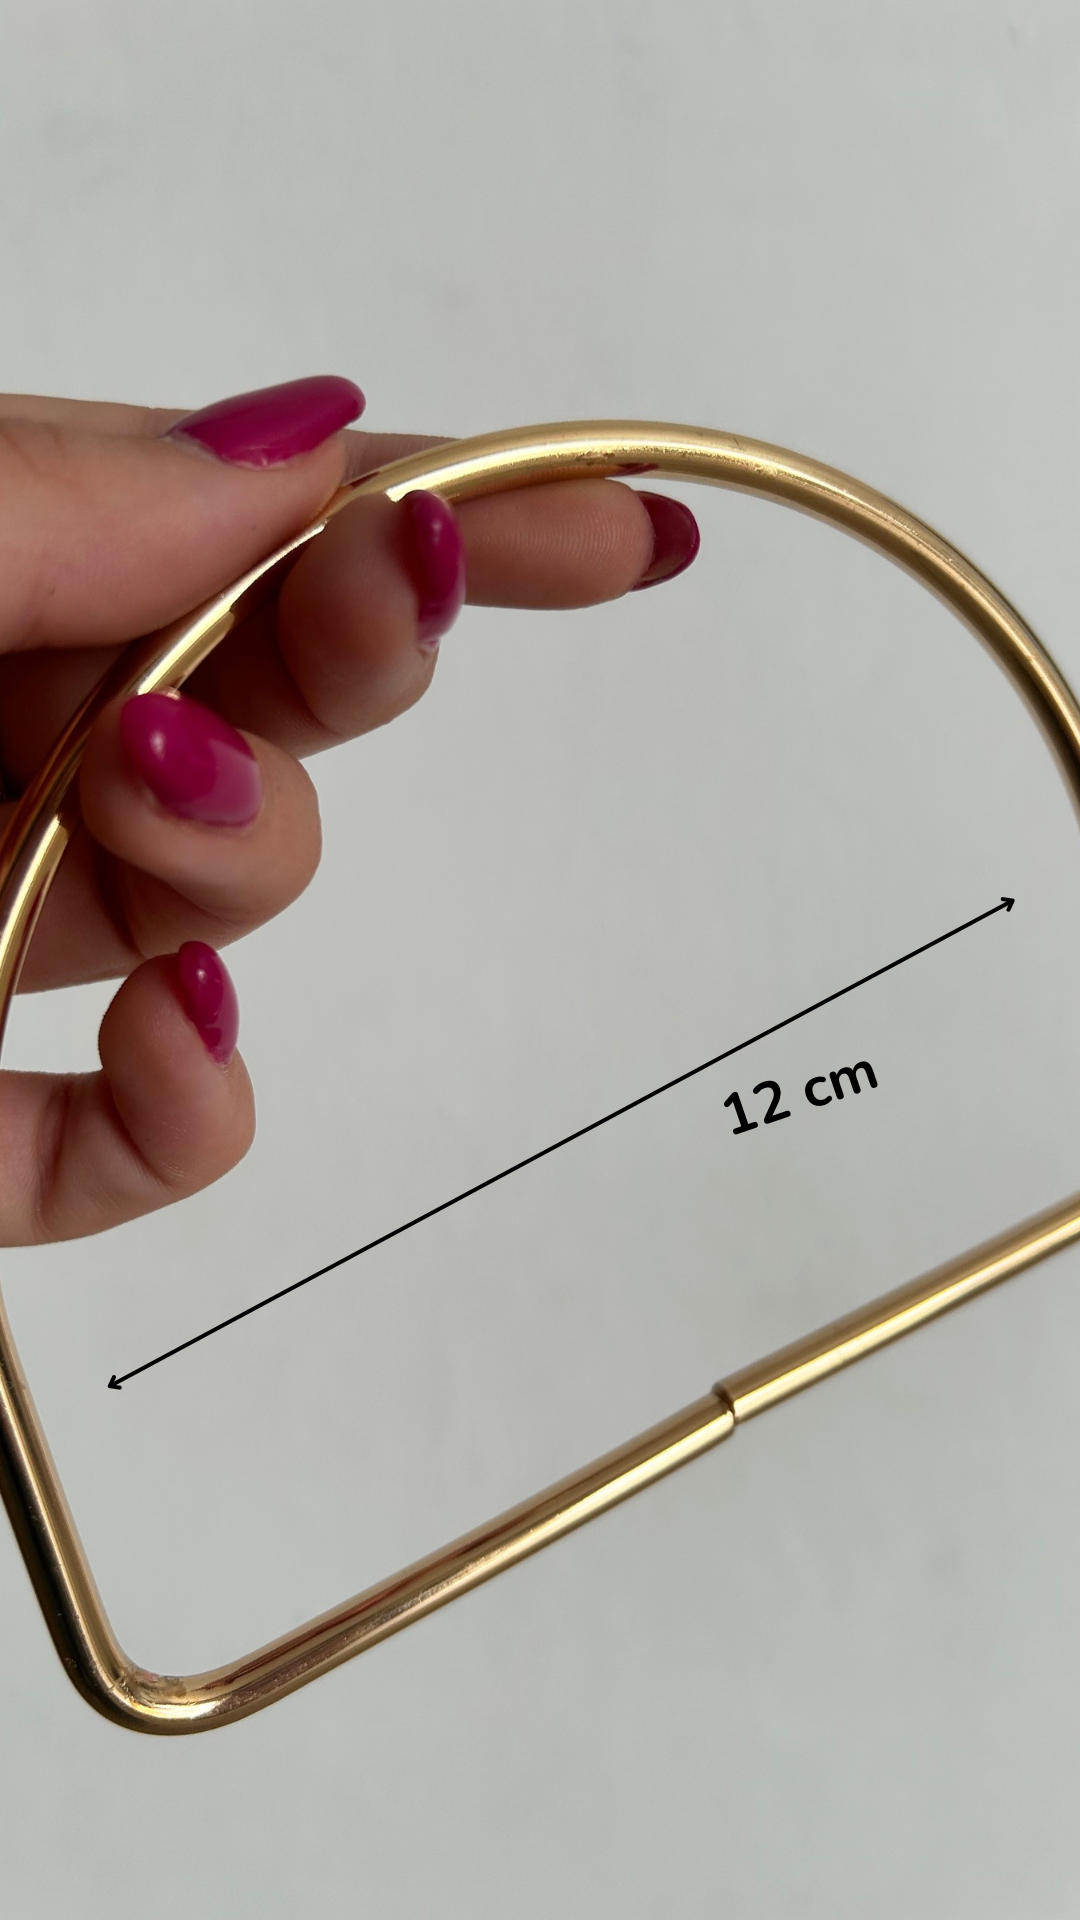 Manico anello mezzaluna 12 cm